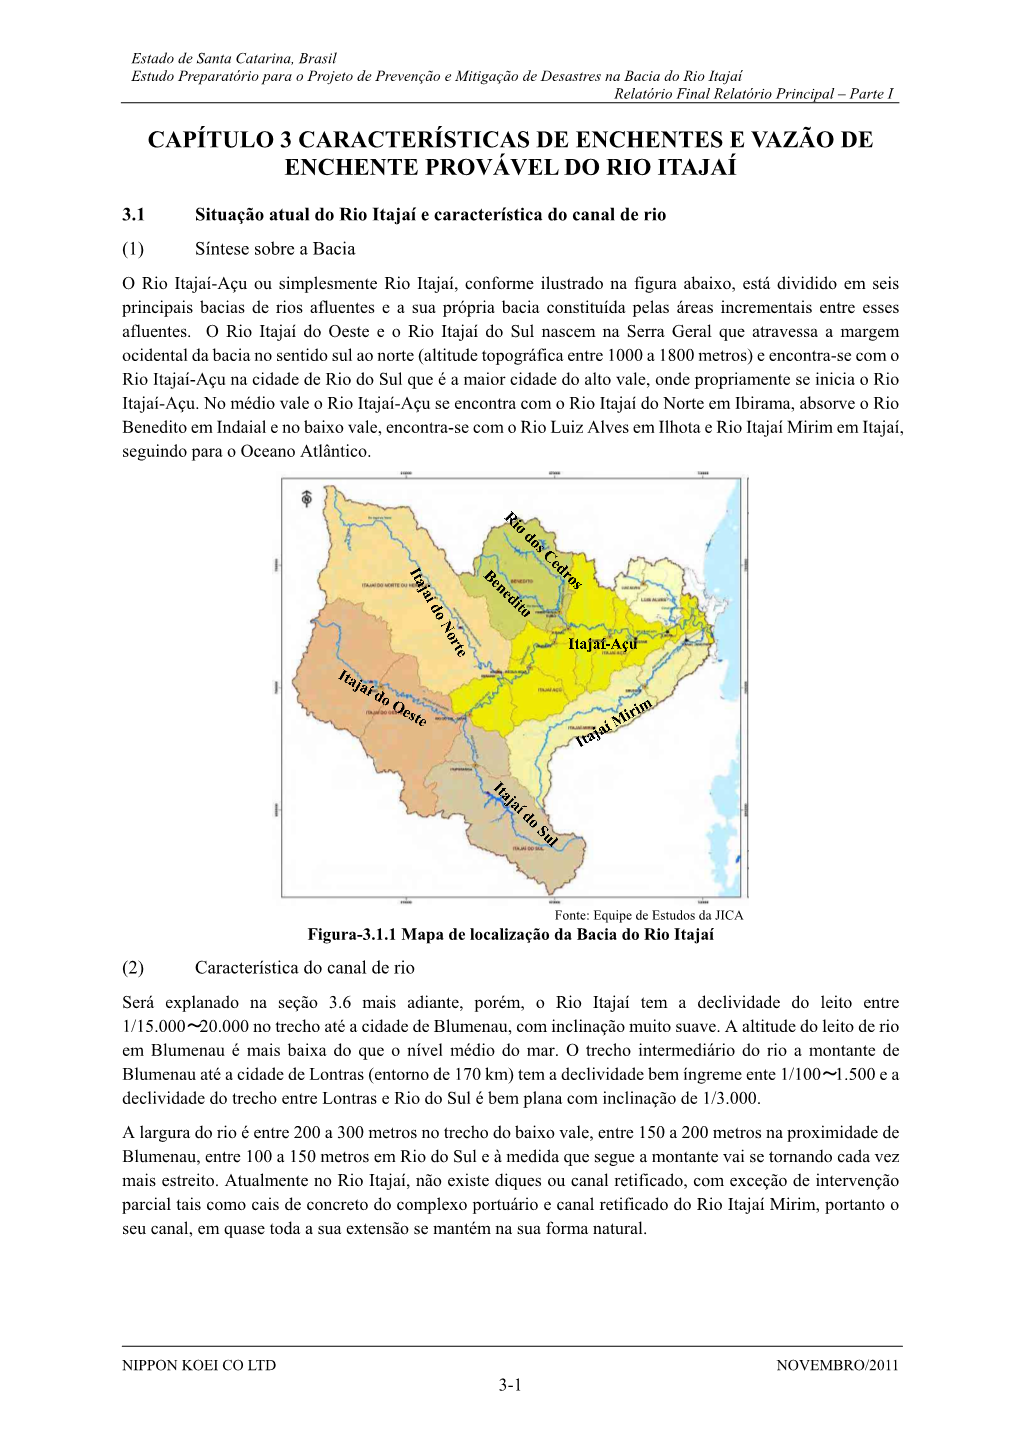 Capítulo 3 Características De Enchentes E Vazão De Enchente Provável Do Rio Itajaí